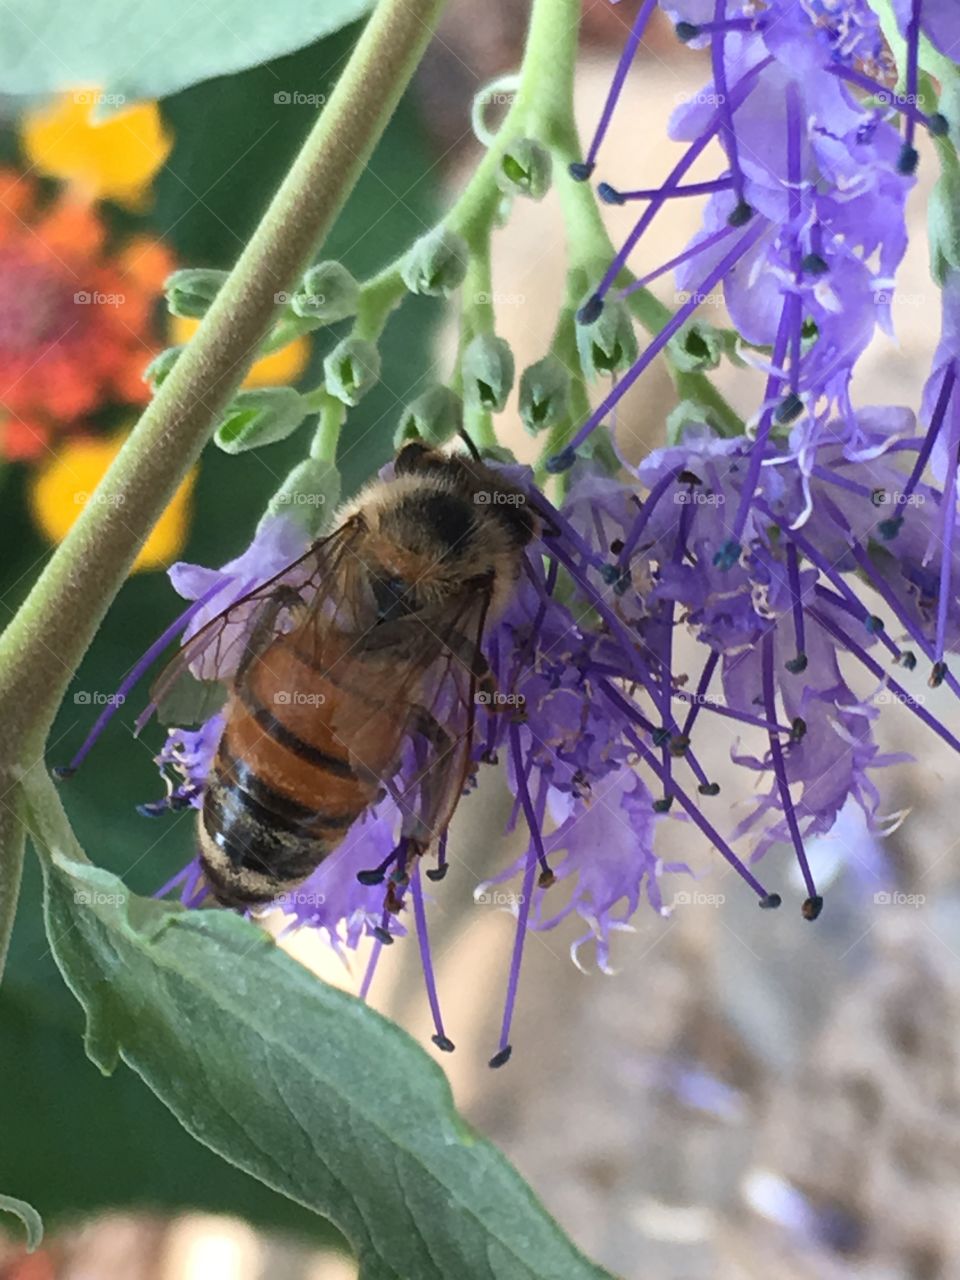 Bee on a purple flower 